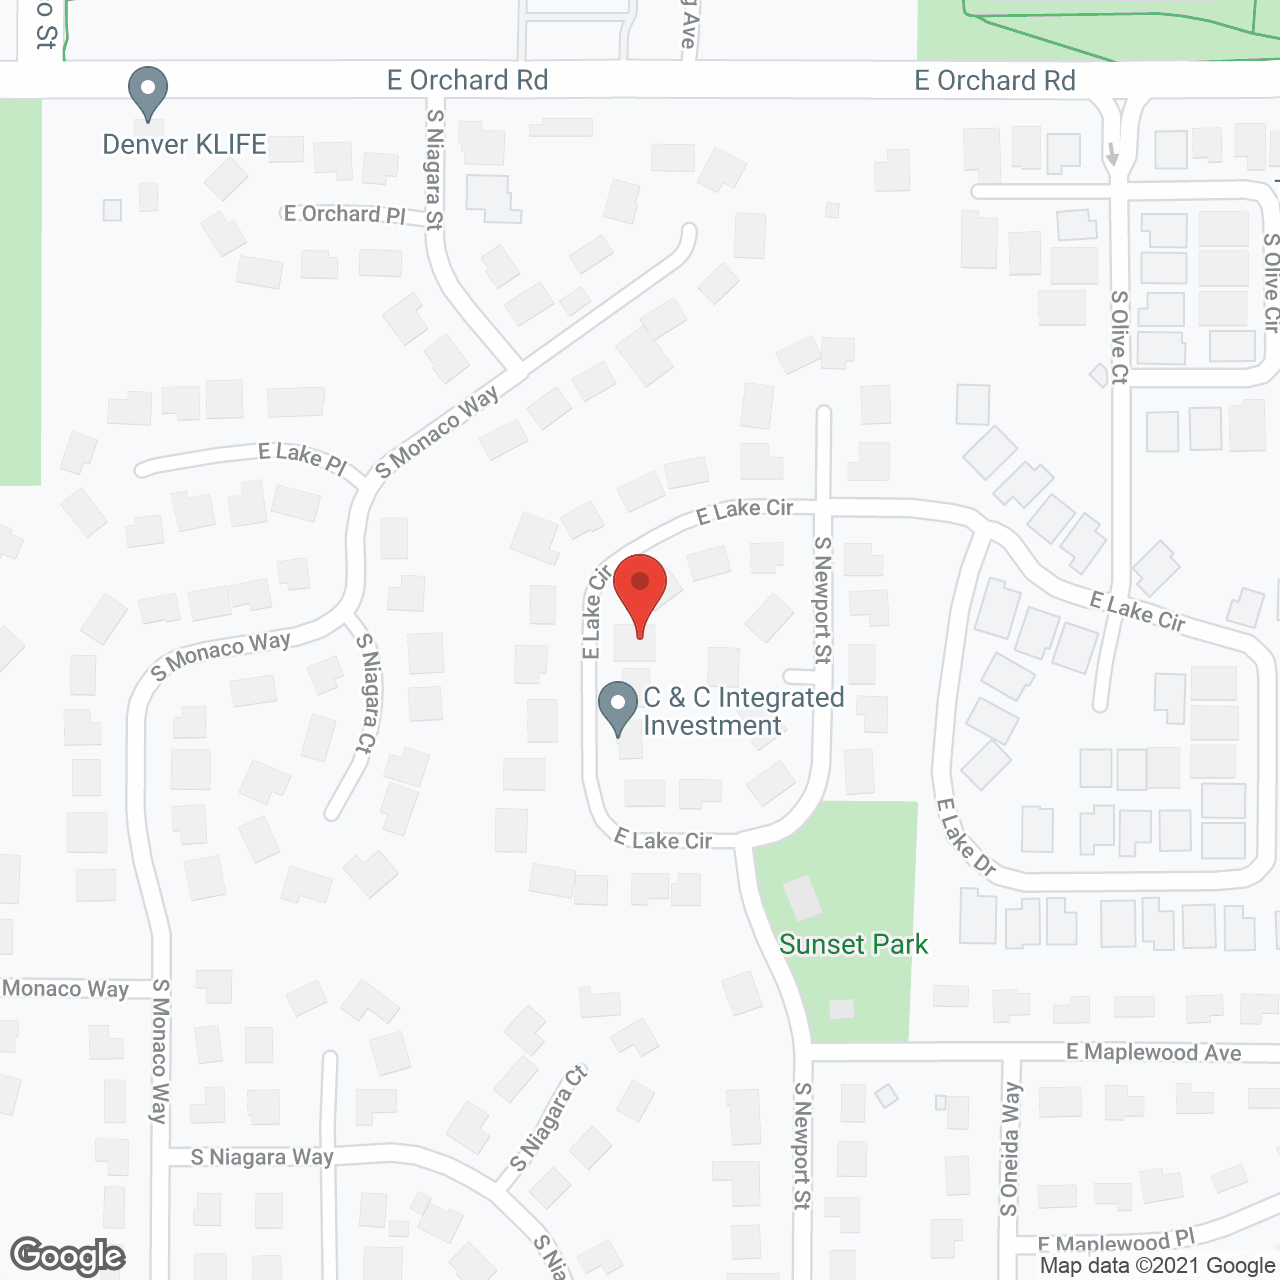 Senior Residences in google map